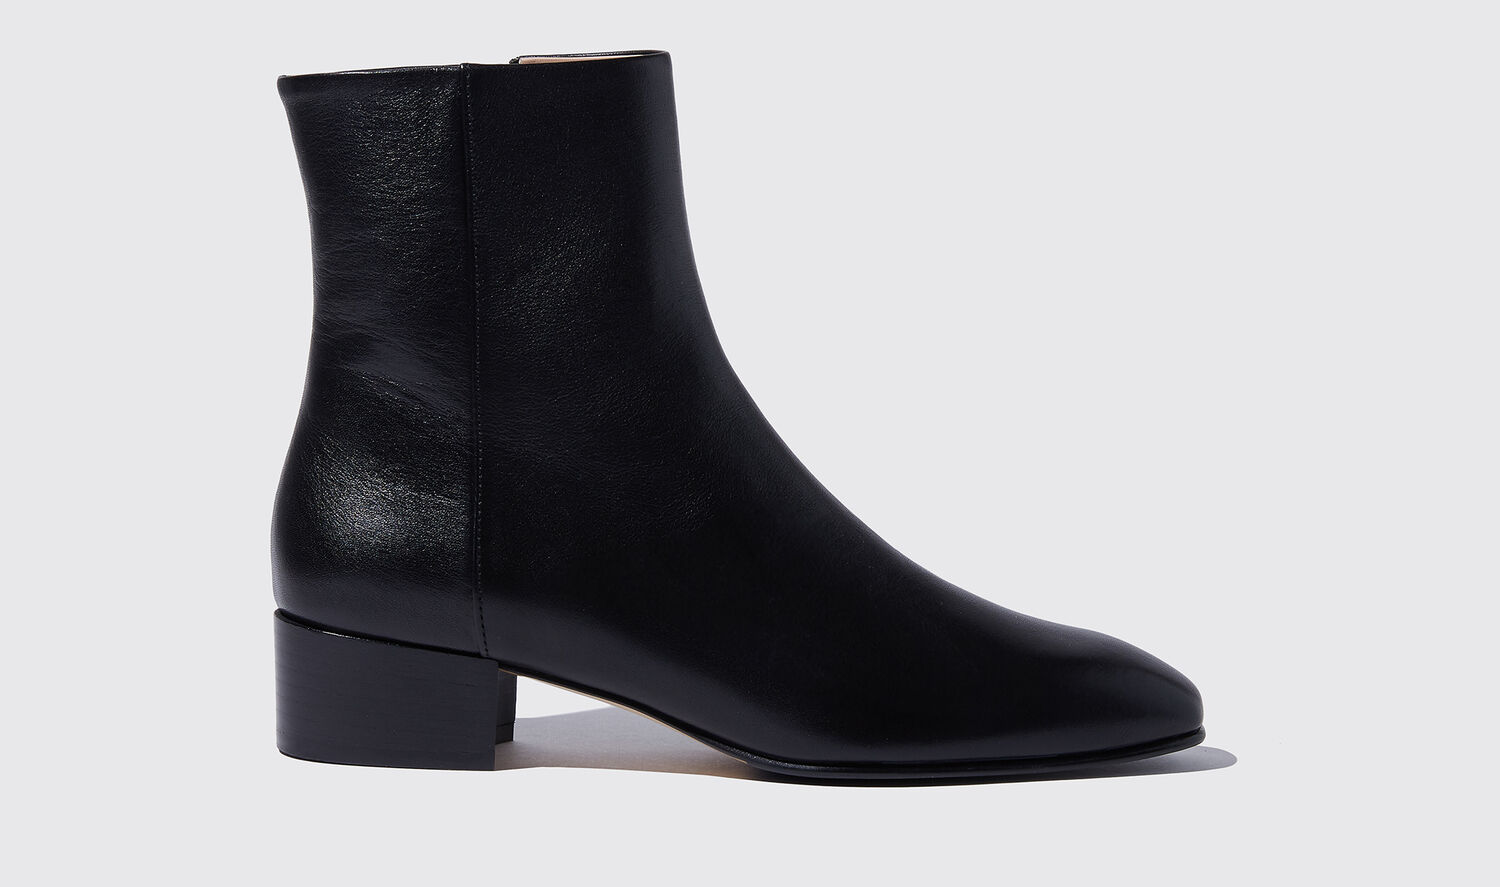 Scarosso Boots Ambra Nera Calf Leather In Black - Calf